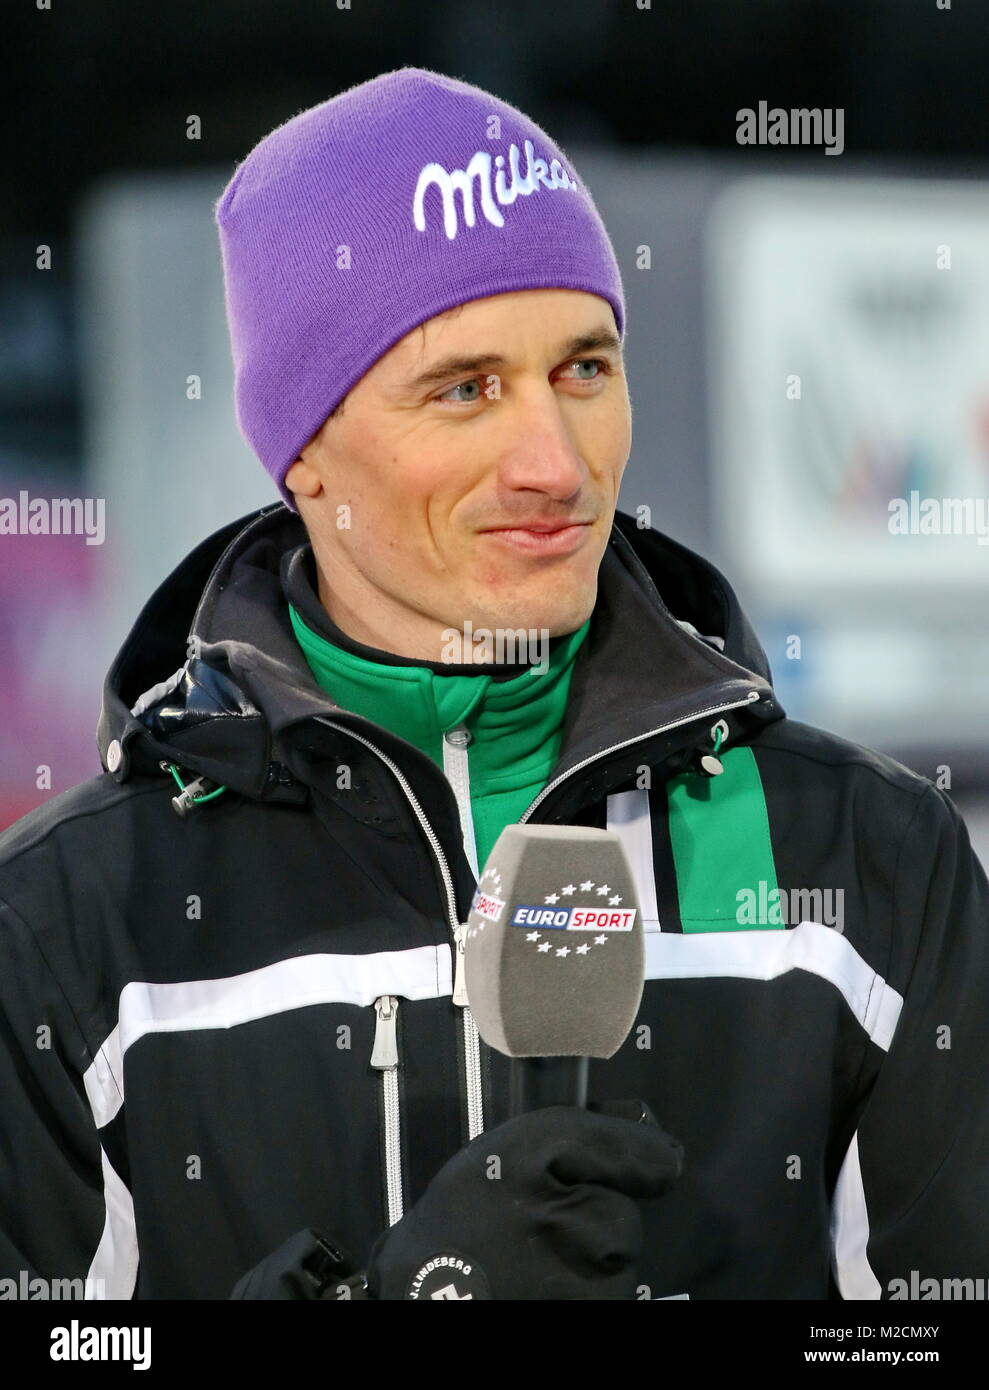 Martin SCHMITT, Experte, Eurosport, TV, Ex-Skispringer, Weltmeister, Qualfikation für 63. Vierschanzentournee Auftaktspringen Oberstdorf Stock Photo